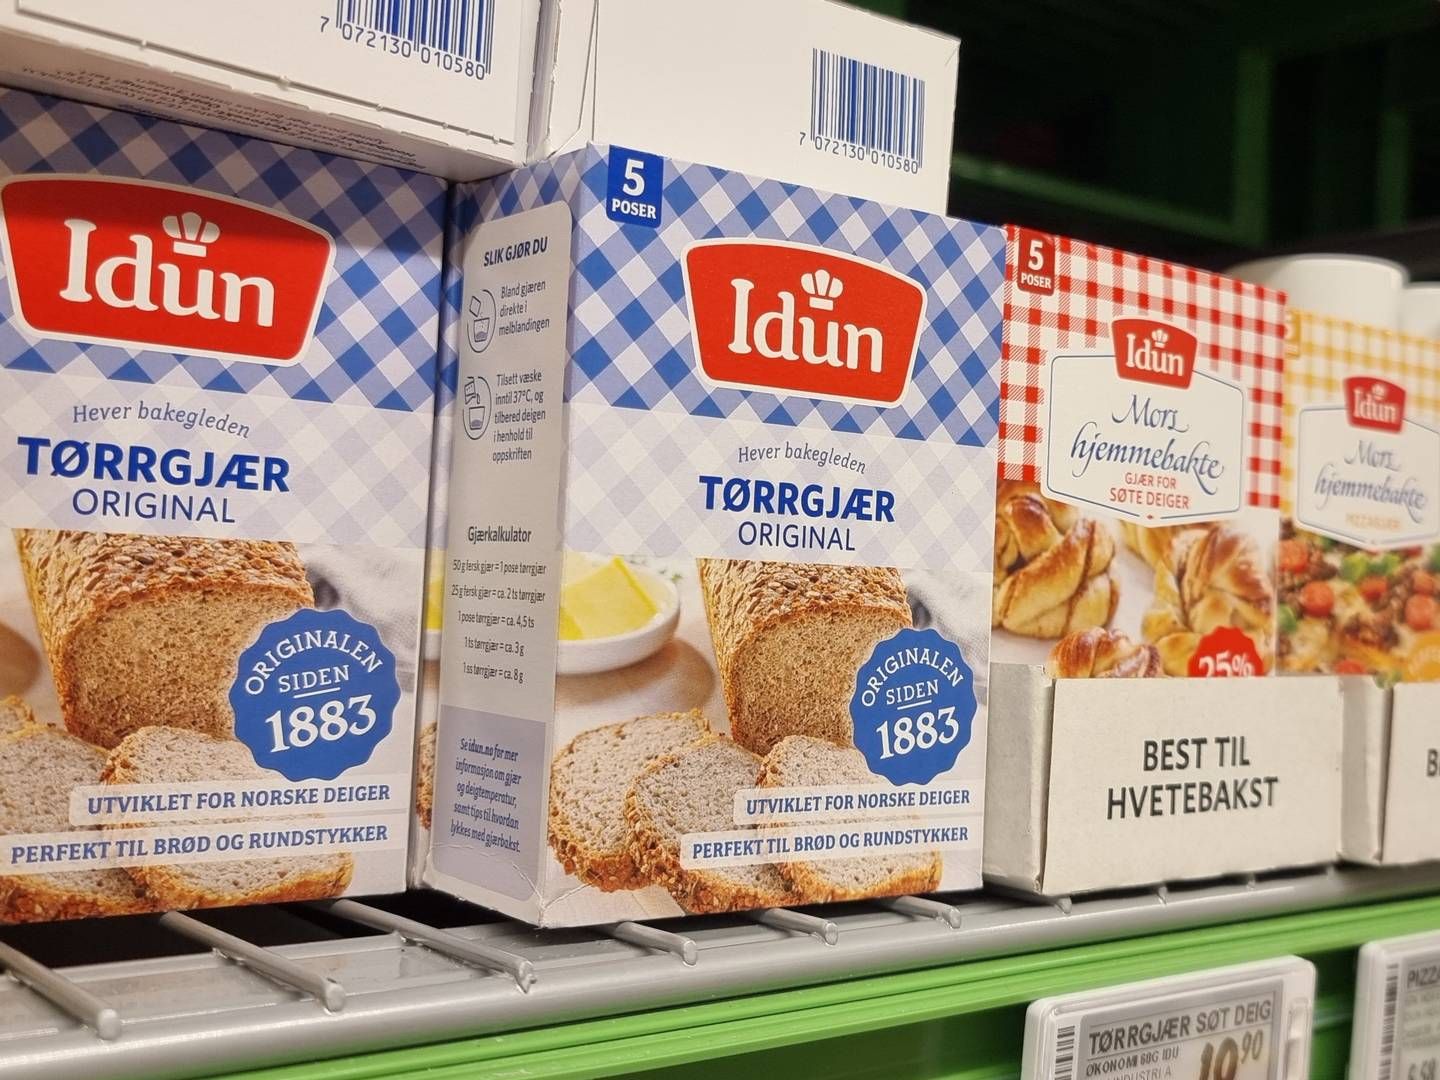 Idun Industri er produsent og leverandør av bake- og iskremingredienser. | Photo: Anders Hustveit Gerhardsen